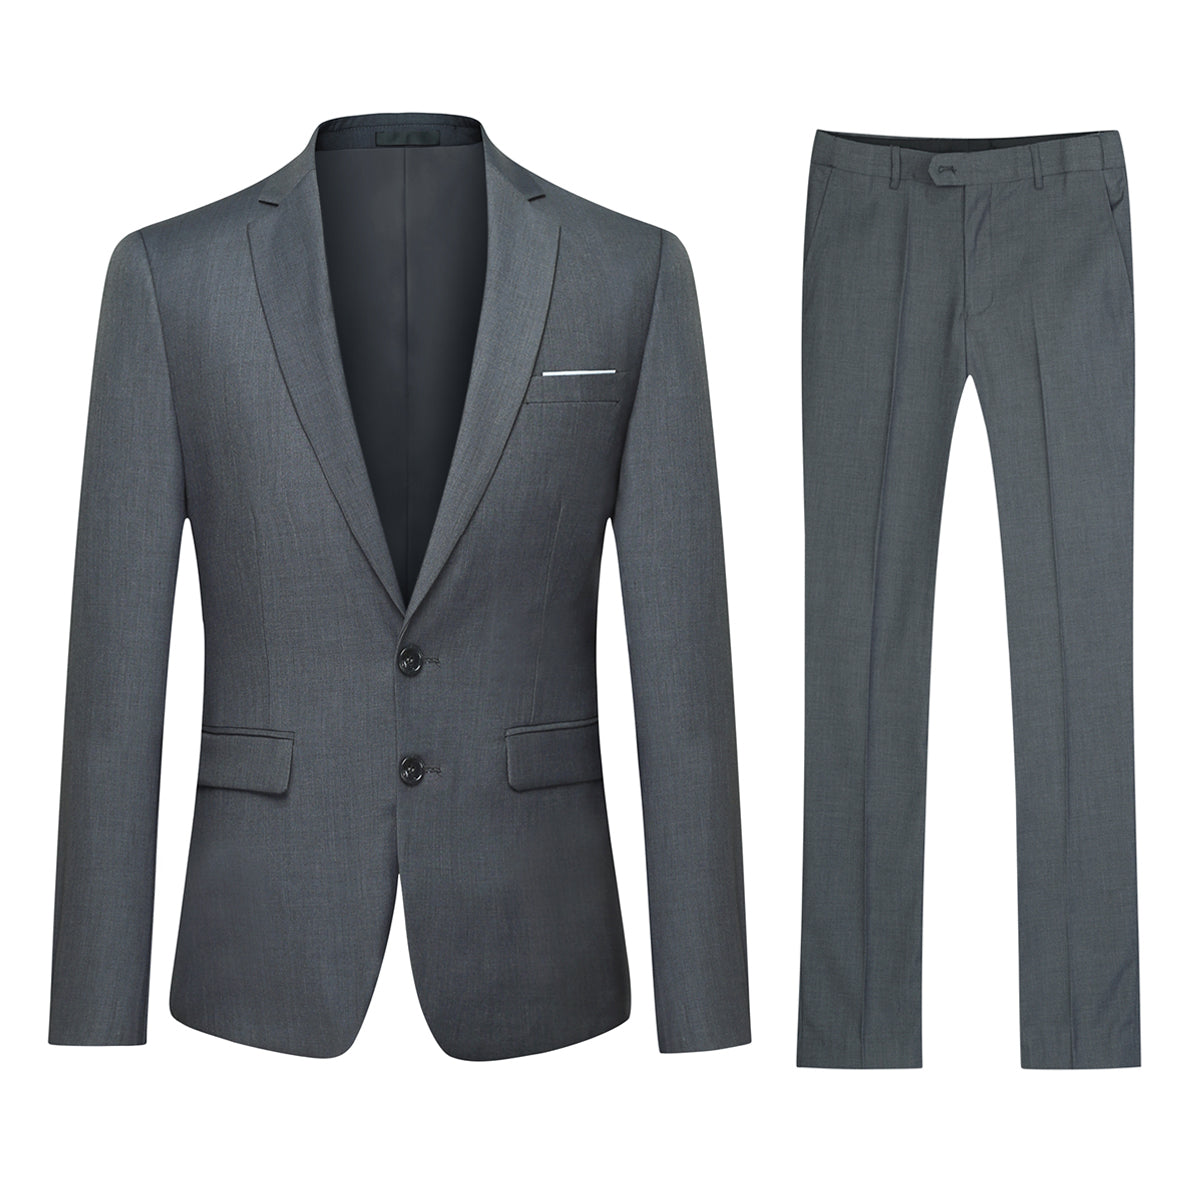 Mens 2-Piece Slim Fit Two Button Grey Suit